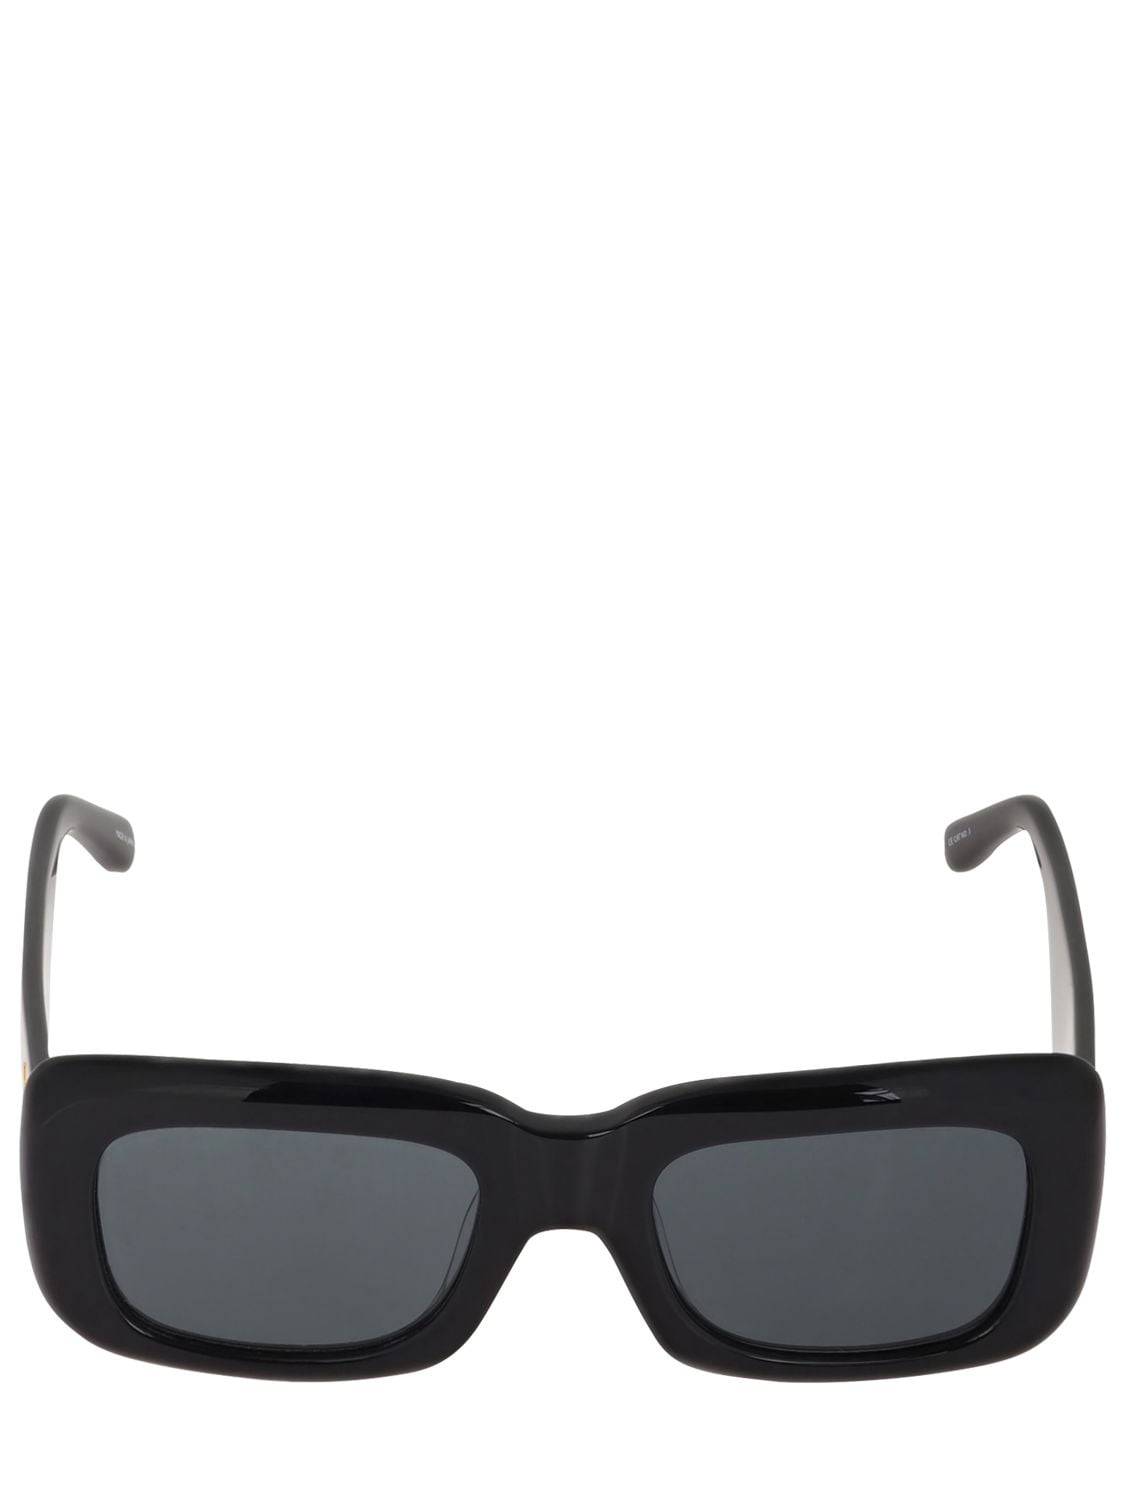 Image of Marfa Squared Bio-acetate Sunglasses